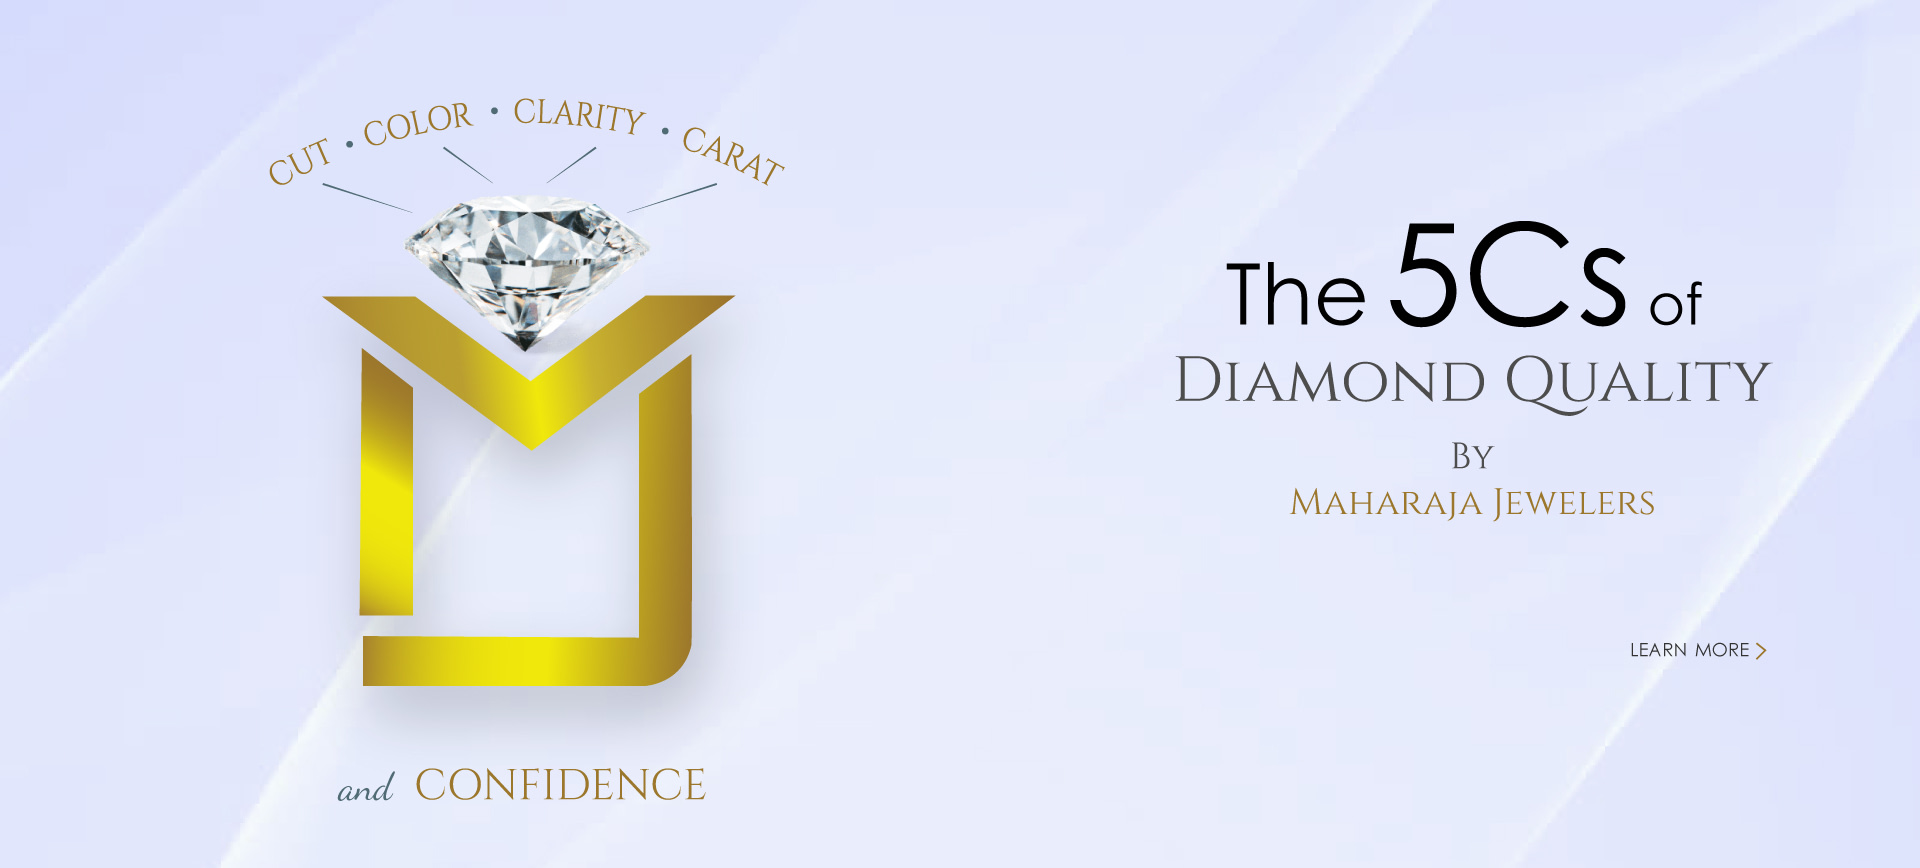 Diamond Engagement Rings Best Price In Hillcroft Houston, TX